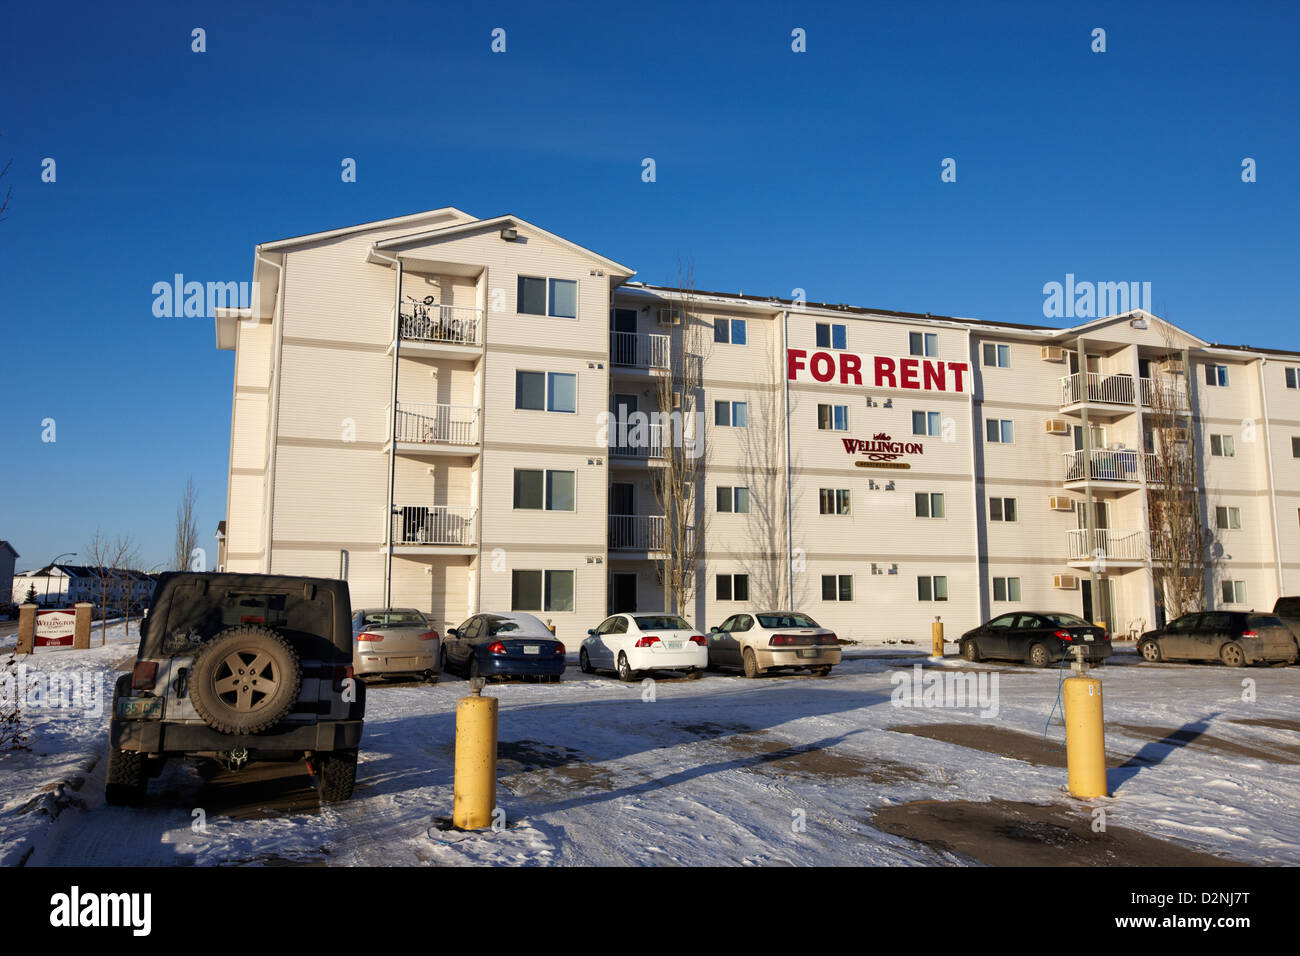 Appartements duplex à louer en hiver Saskatoon Saskatchewan Canada Banque D'Images